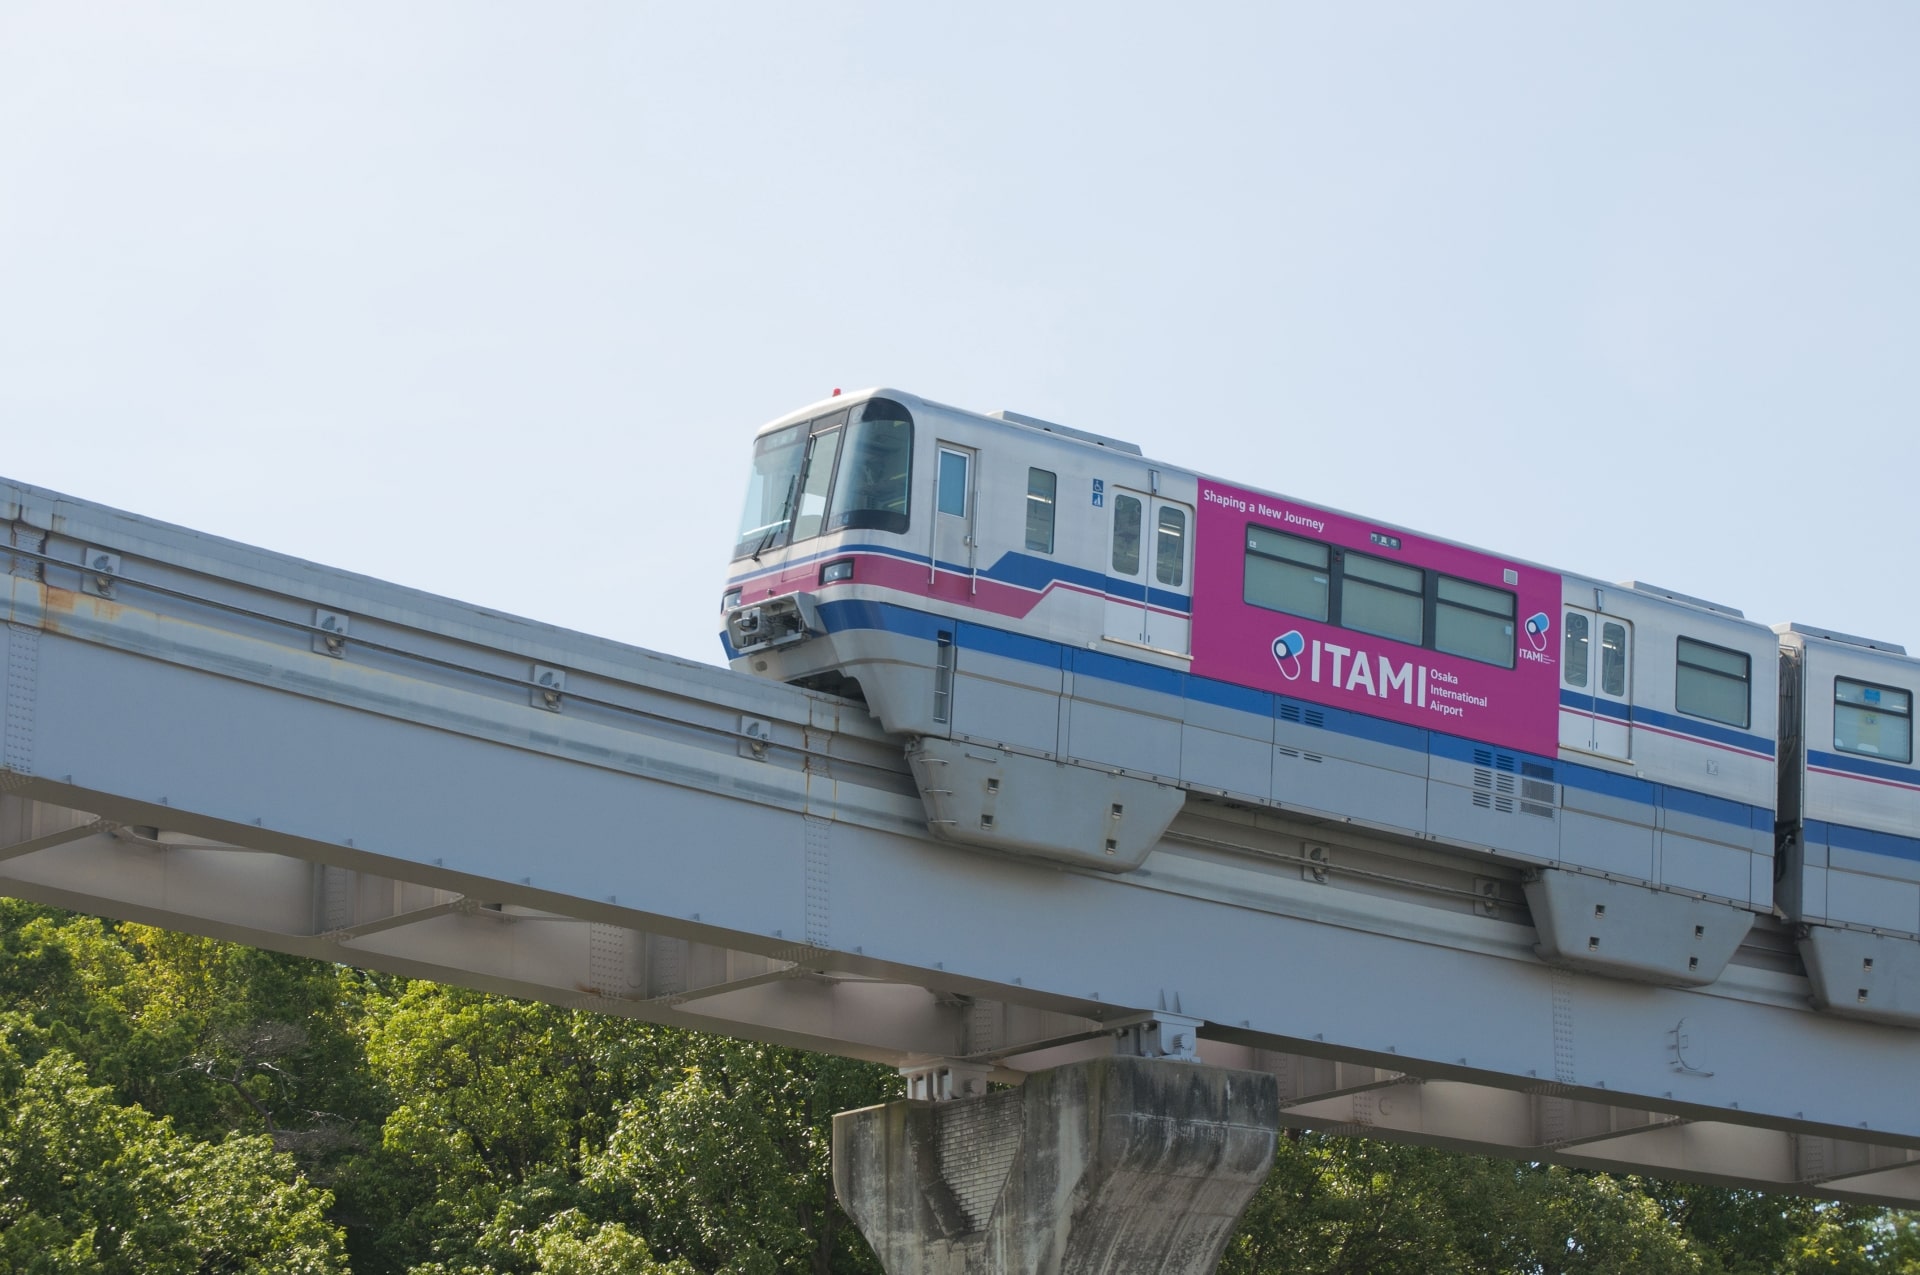 Itami train